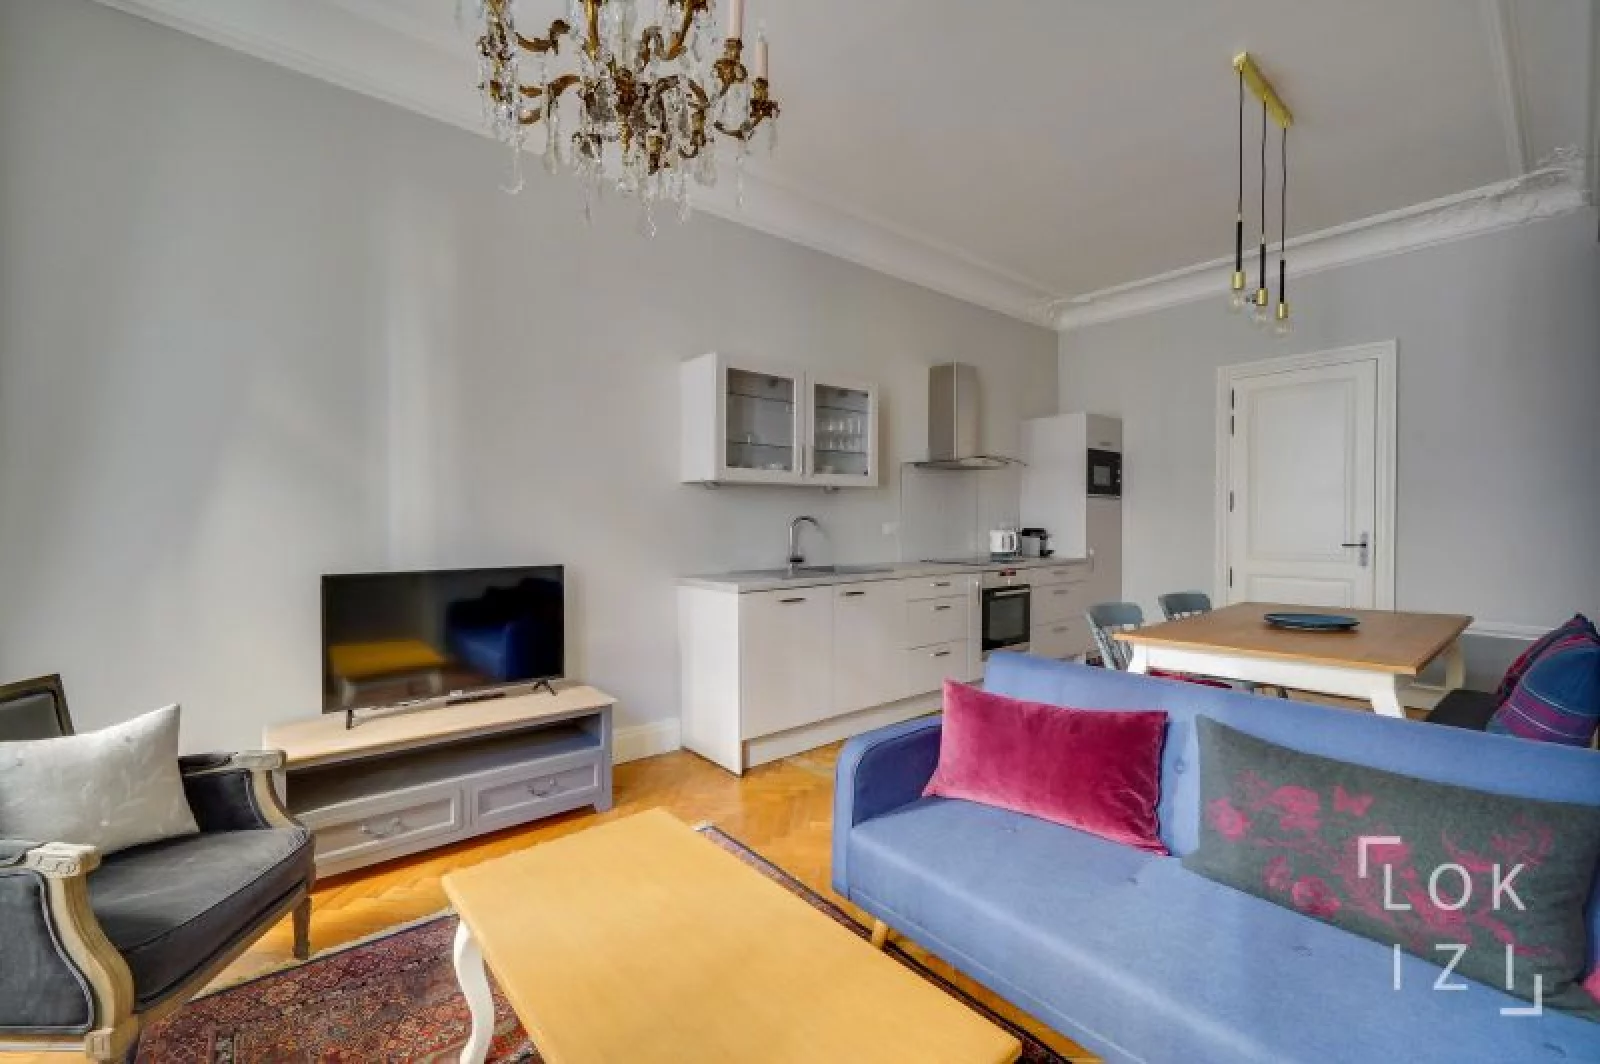 Location appartement meublé 49m²  (Bordeaux centre - Pey Berland)